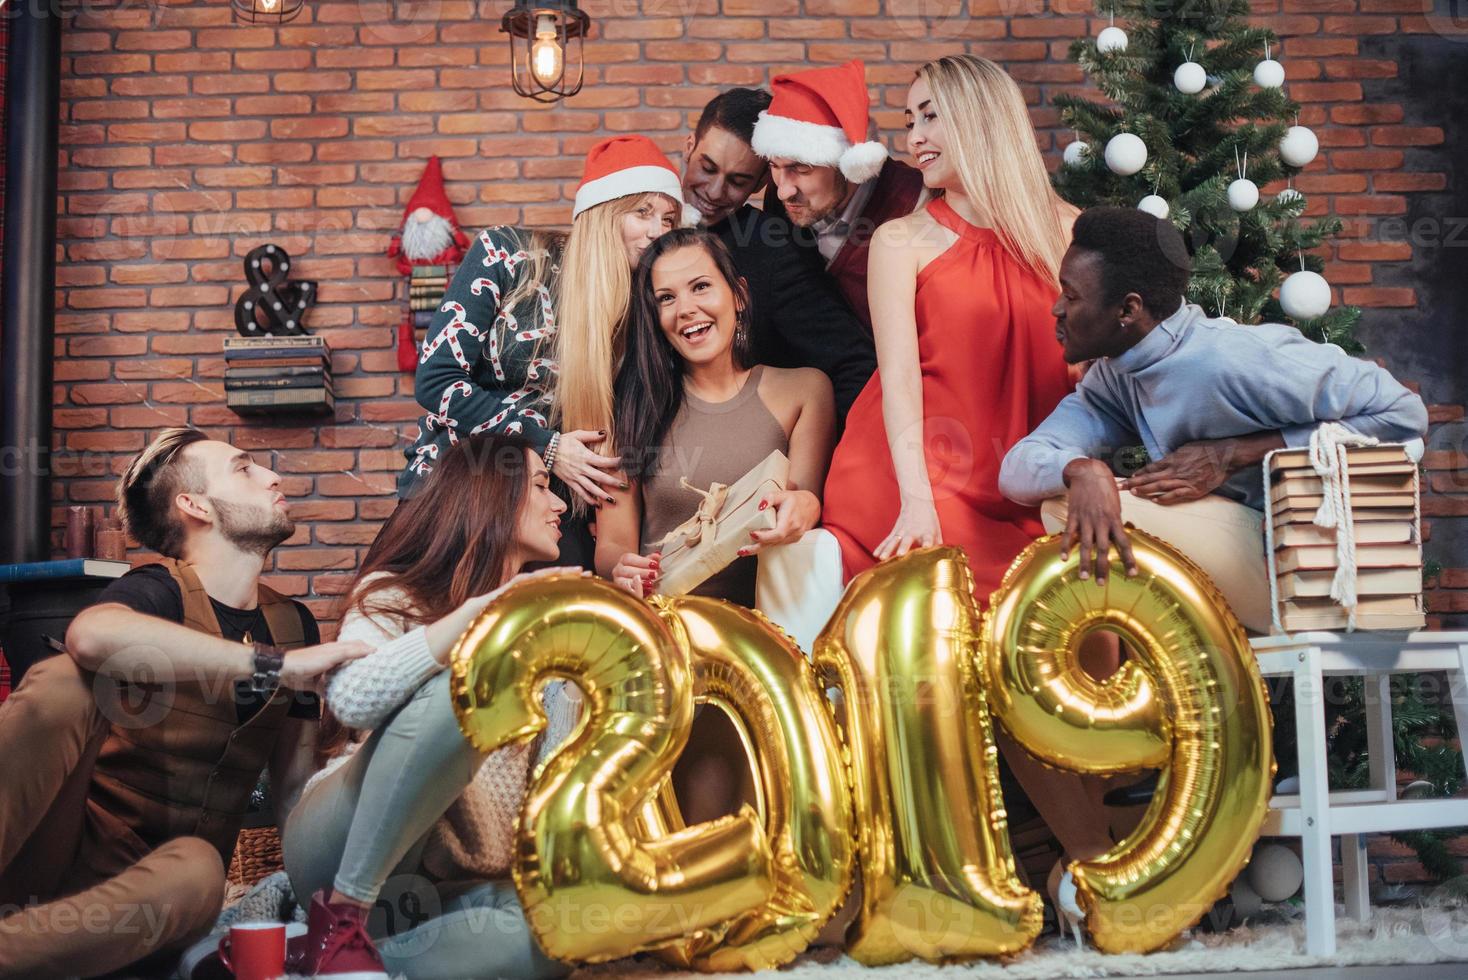 groep vrolijke oude vrienden communiceren met elkaar. het nieuwe jaar van 2019 komt eraan. het nieuwe jaar vieren in een gezellige huiselijke sfeer foto